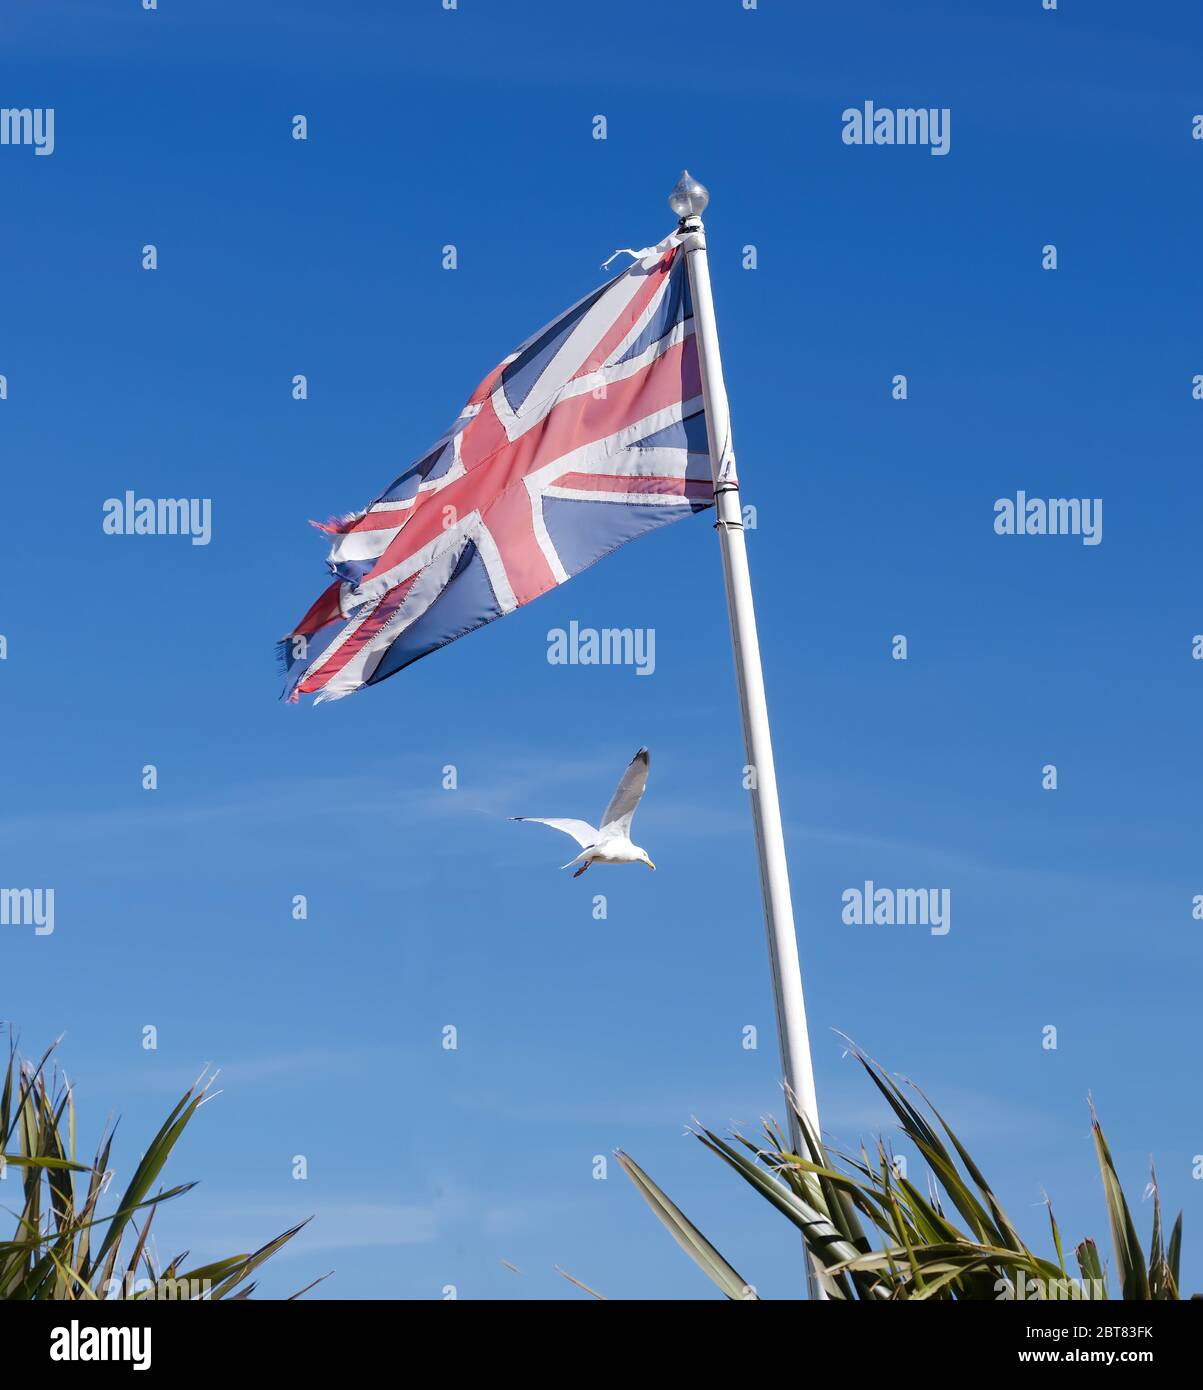 Drapeau britannique emblématique avec un mouette en arrière-plan, photo emblématique du Royaume-Uni ou de la Grande-Bretagne Banque D'Images